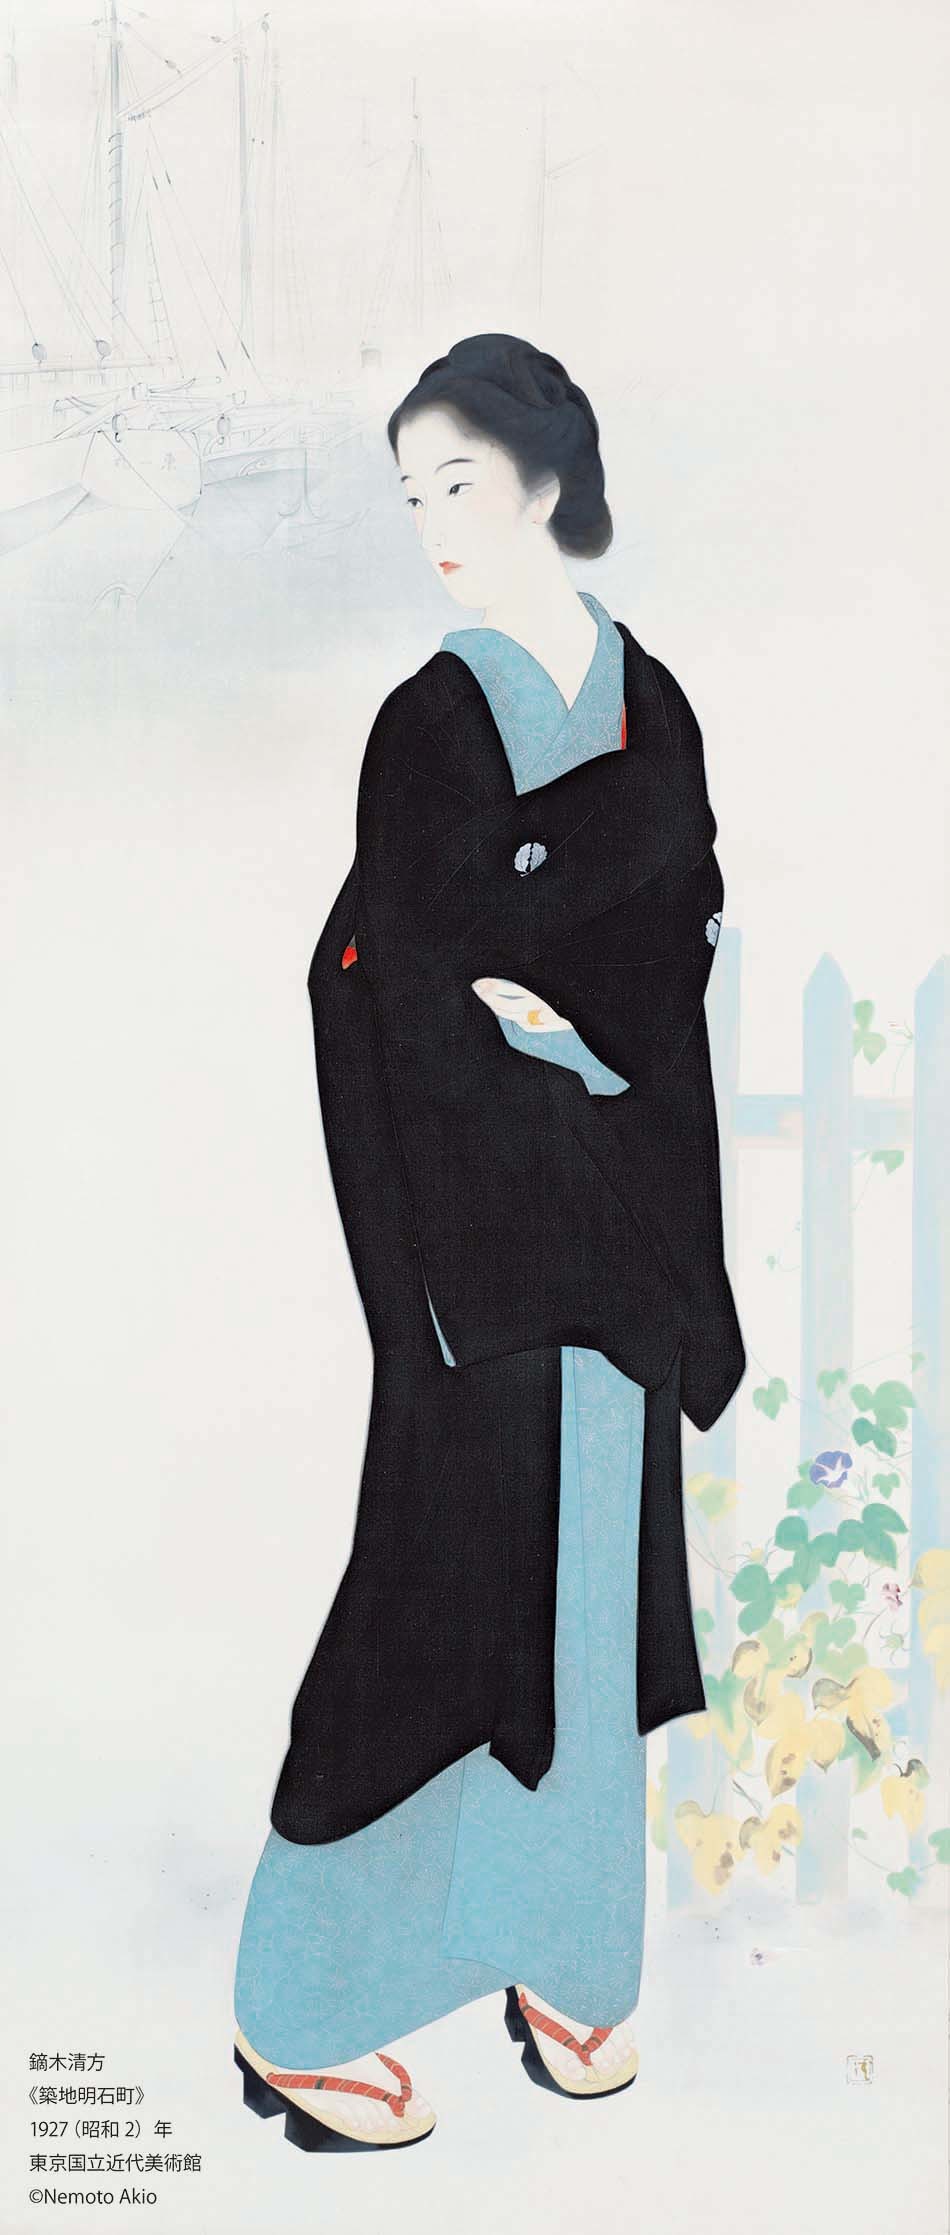 鏑木清方「築地明石町」 1927（昭和2）年、東京国立近代美術館、通期展示、絹本彩色・軸、173.5×74.0cm (c)Nemoto Akio